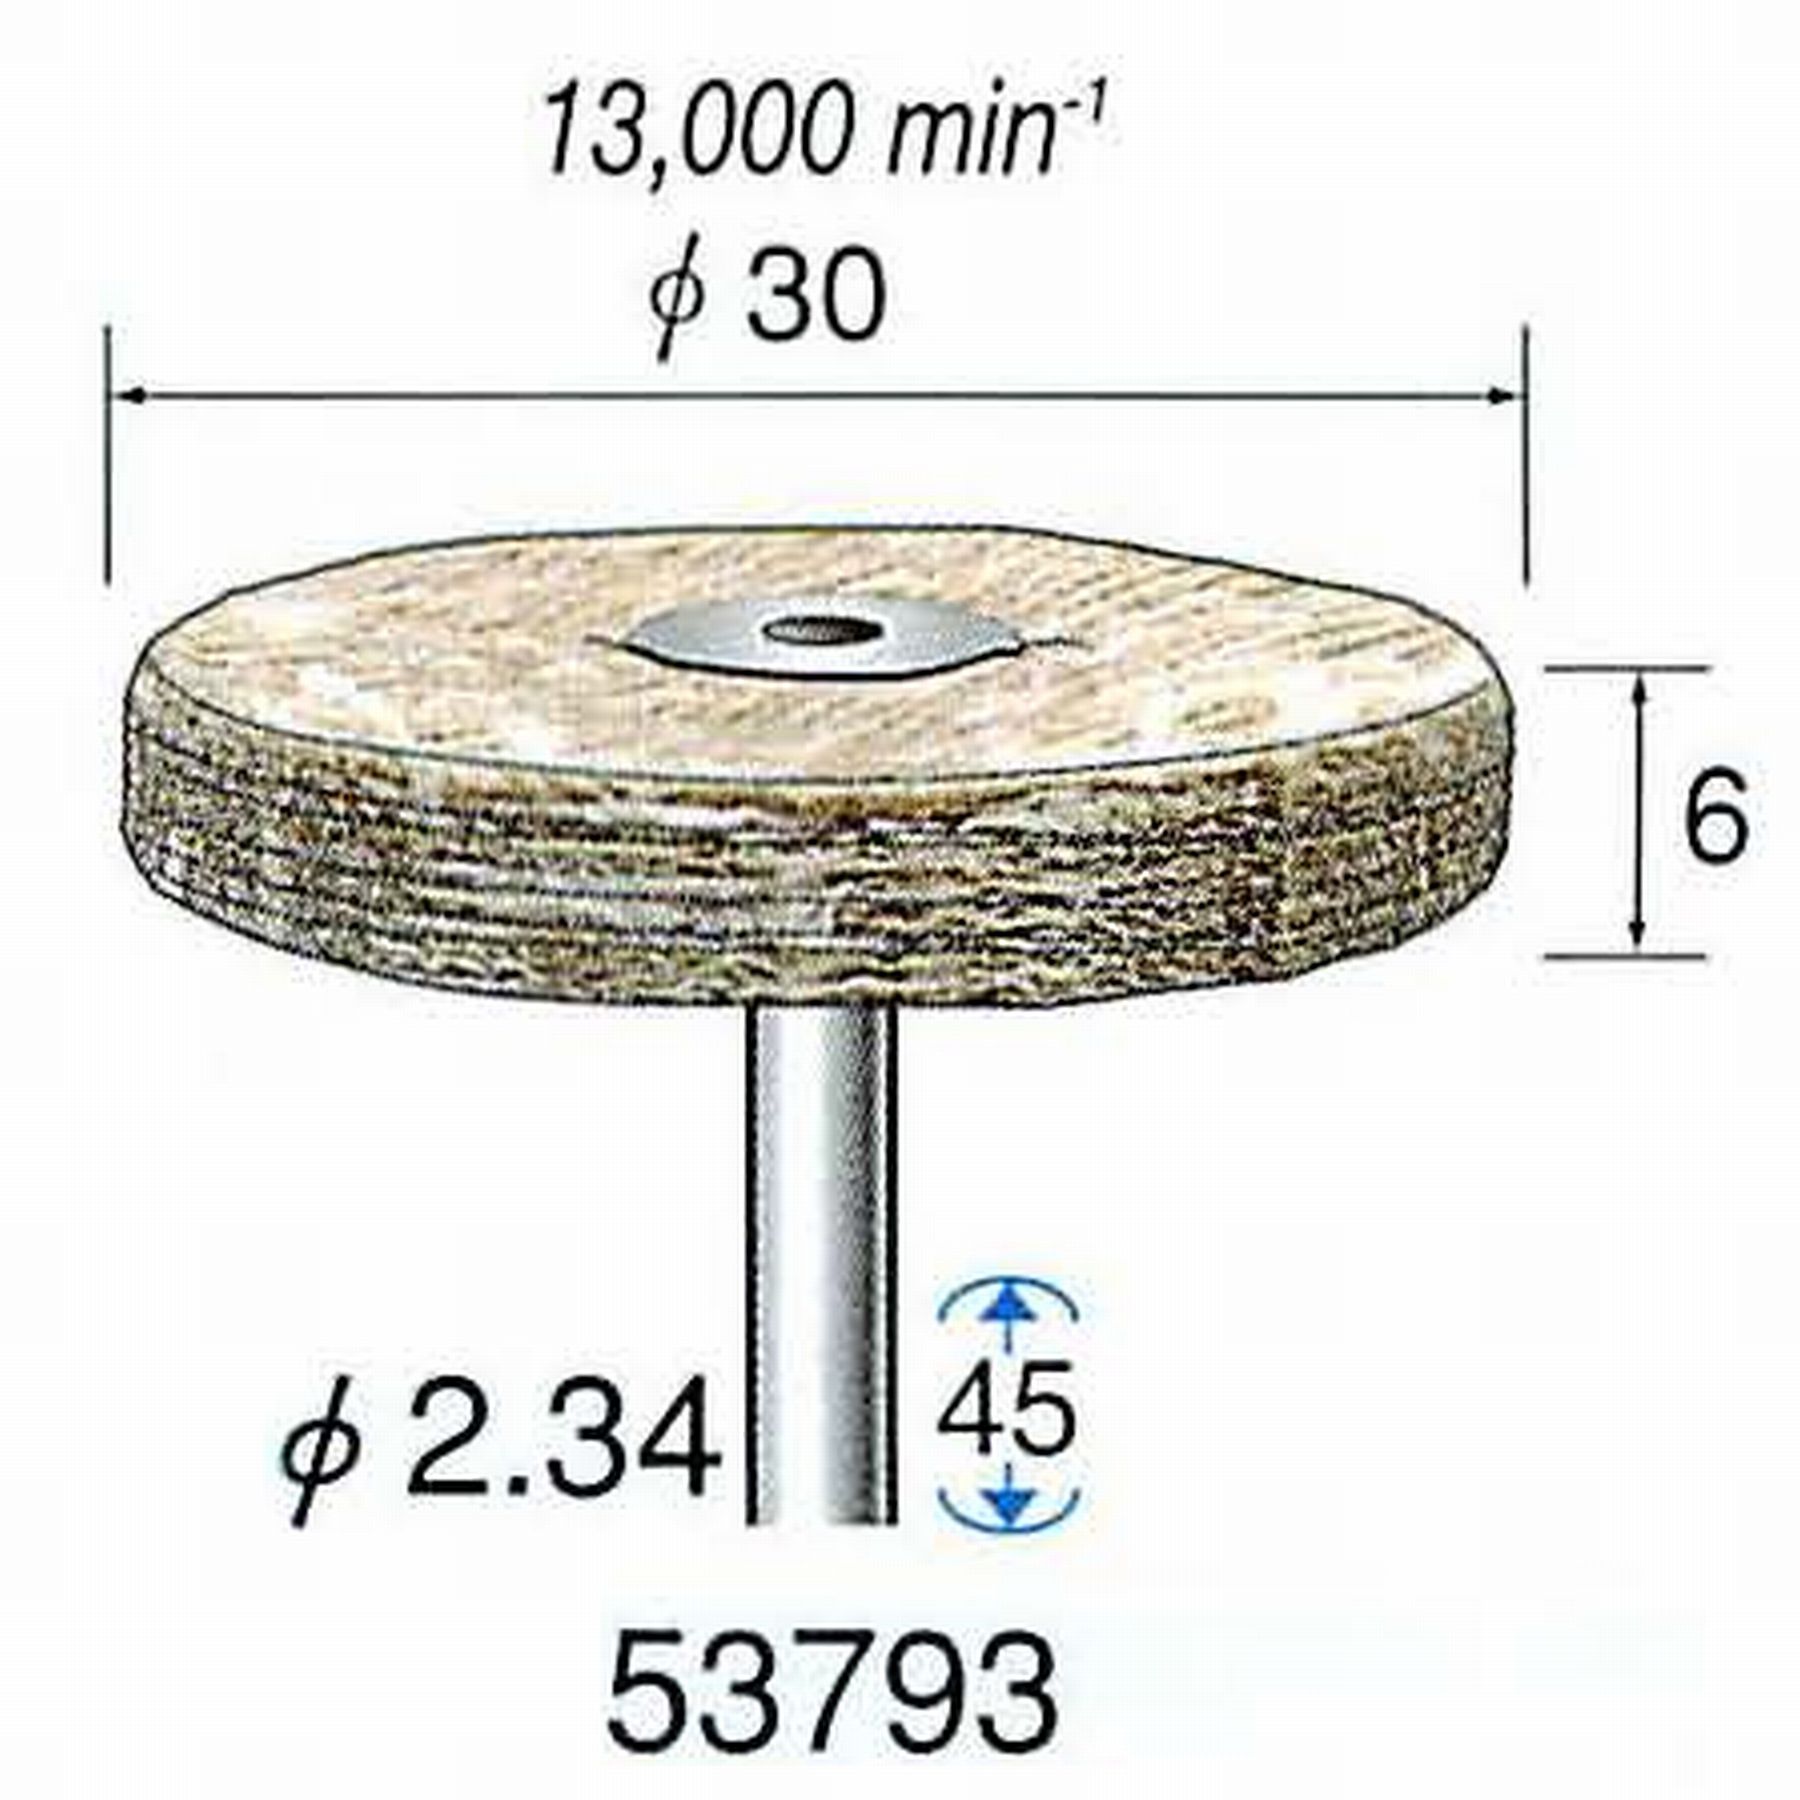 ナカニシ/NAKANISHI 積層ハードバフ 茶褐綿バフ 軸径(シャンク)φ2.34mm 53793